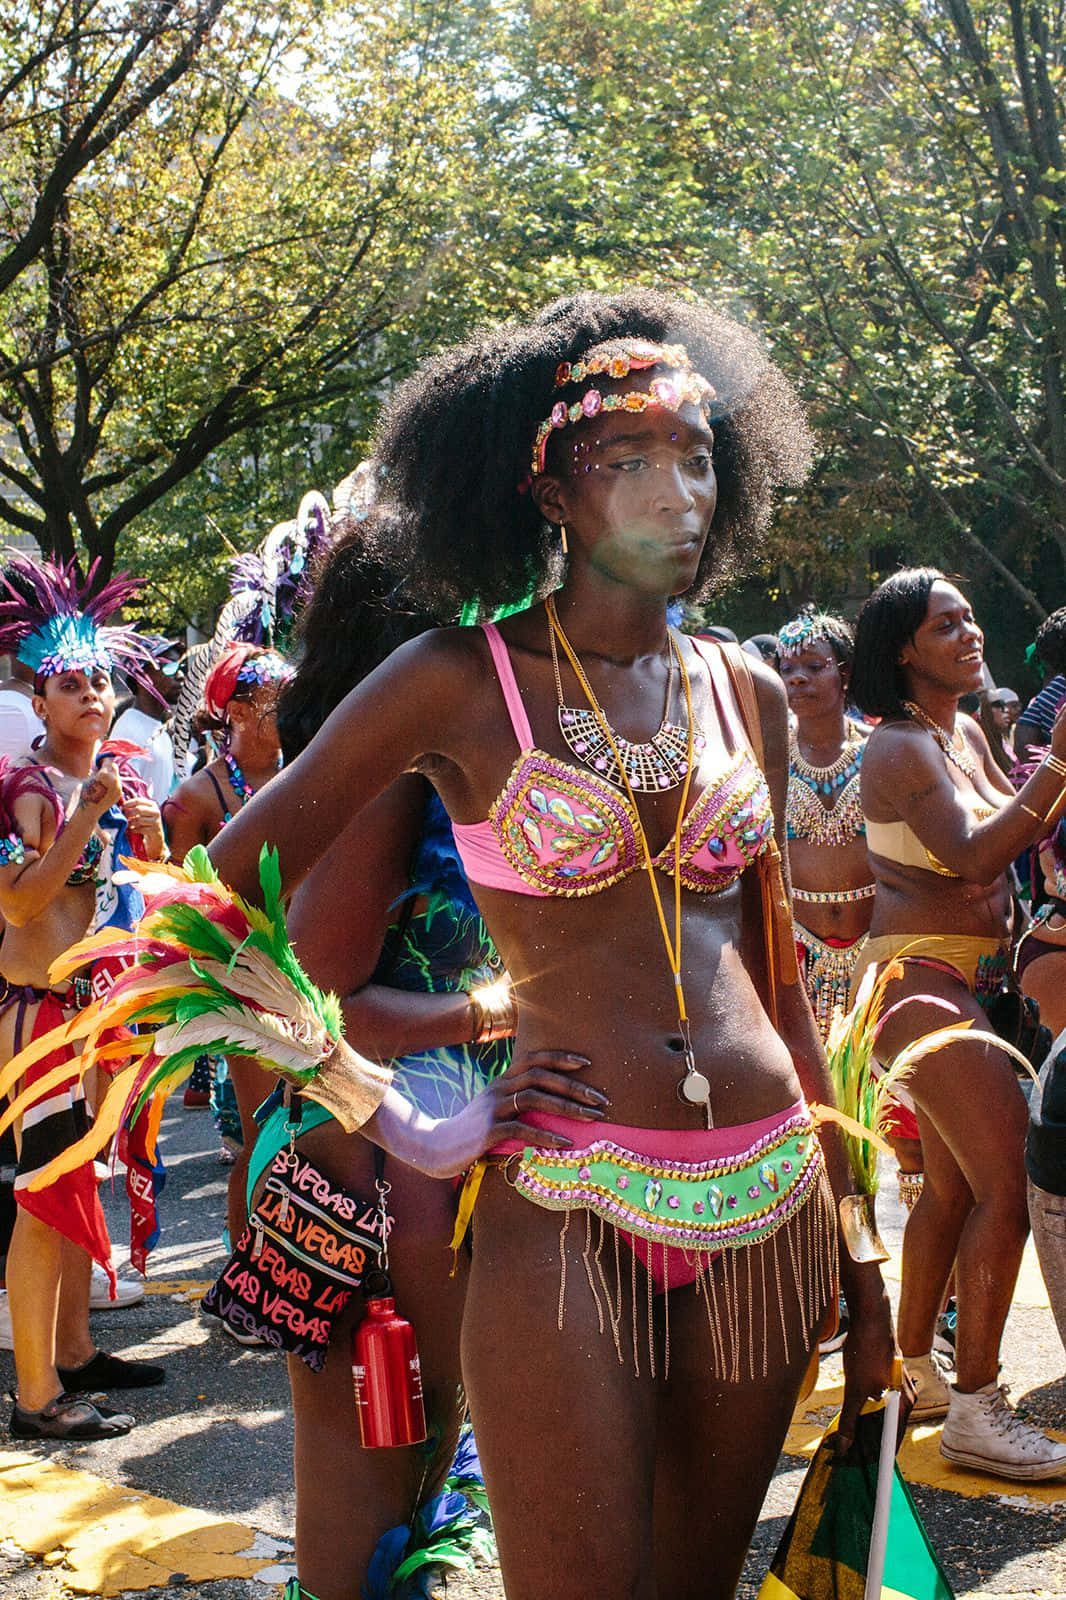 Imagende Una Mujer En Traje De Dos Piezas Durante El Desfile De Carnaval.